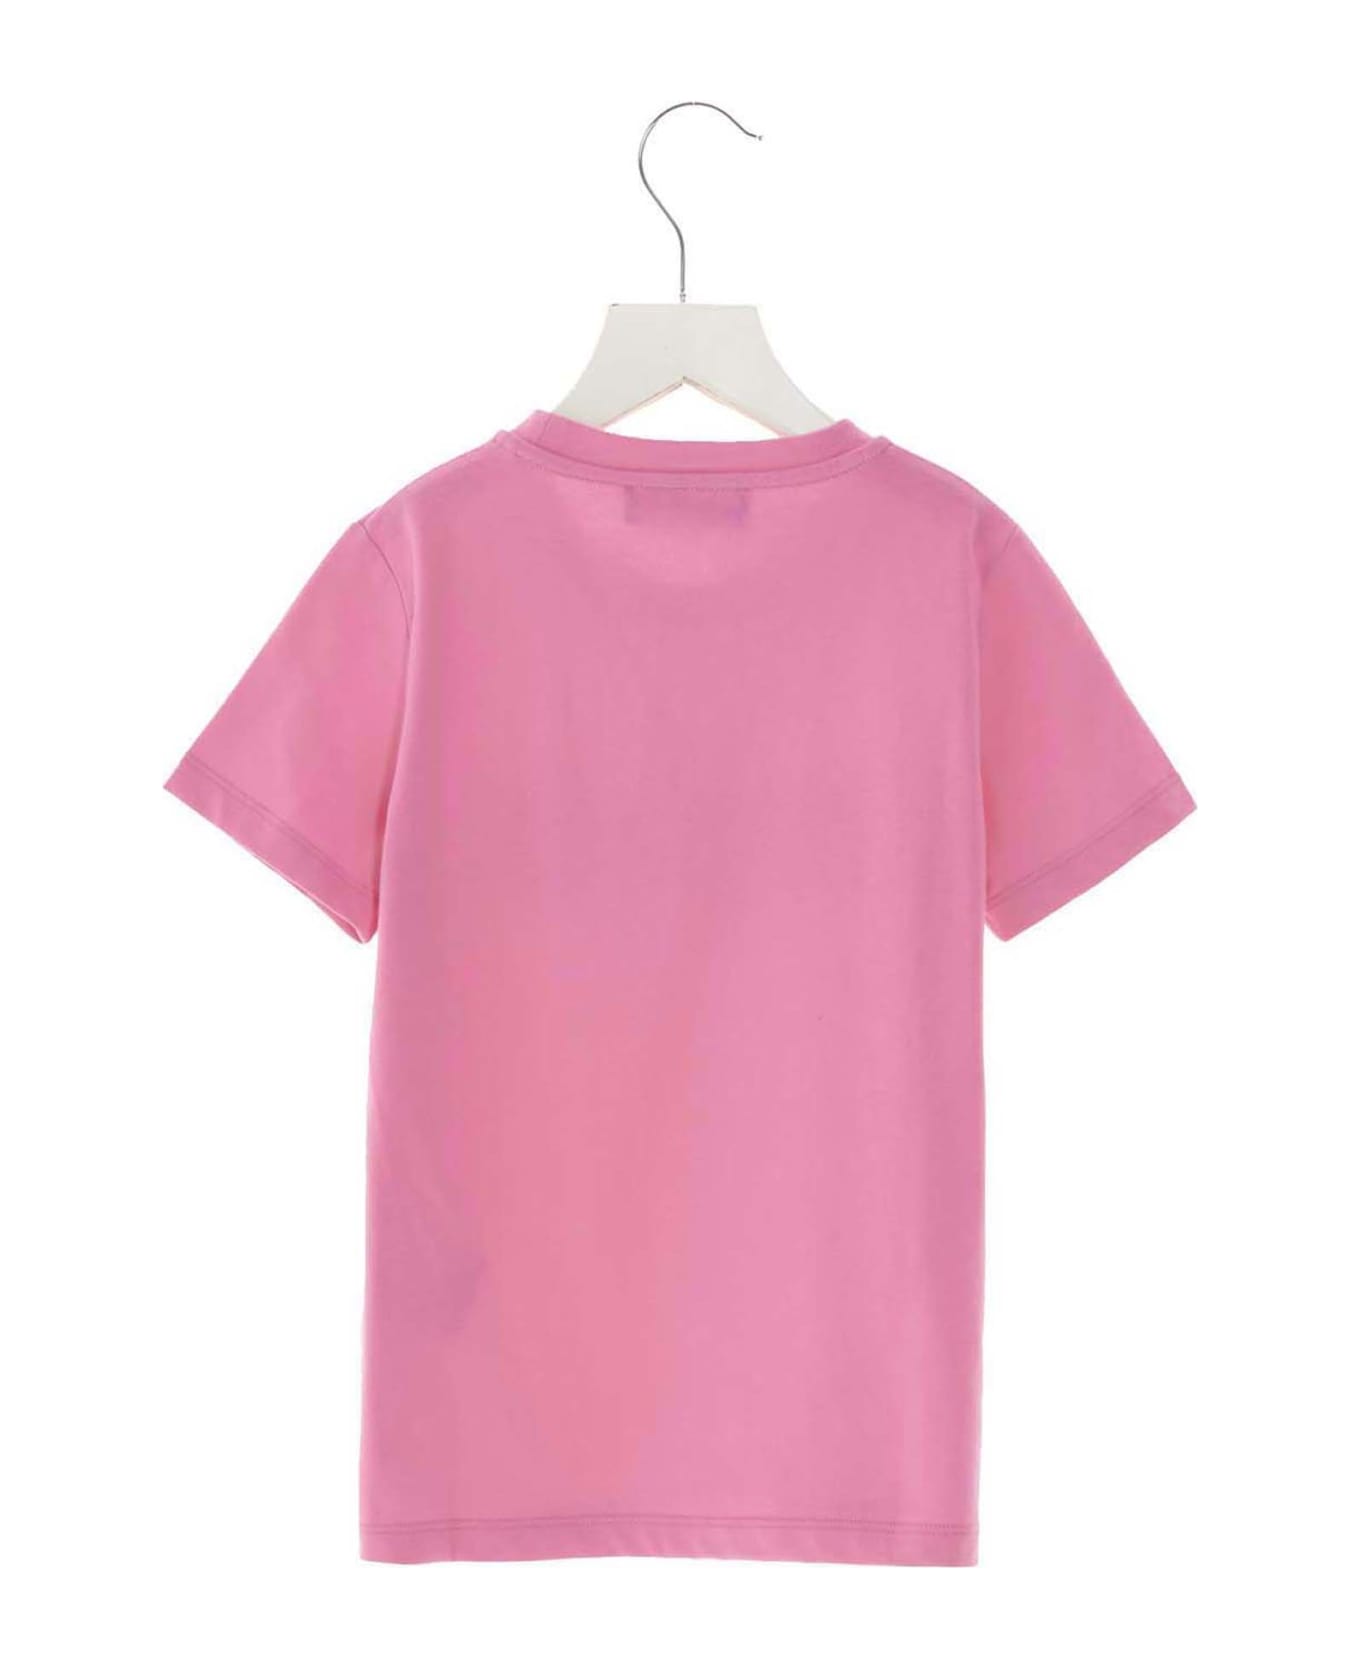 Versace Logo T-shirt - Pink